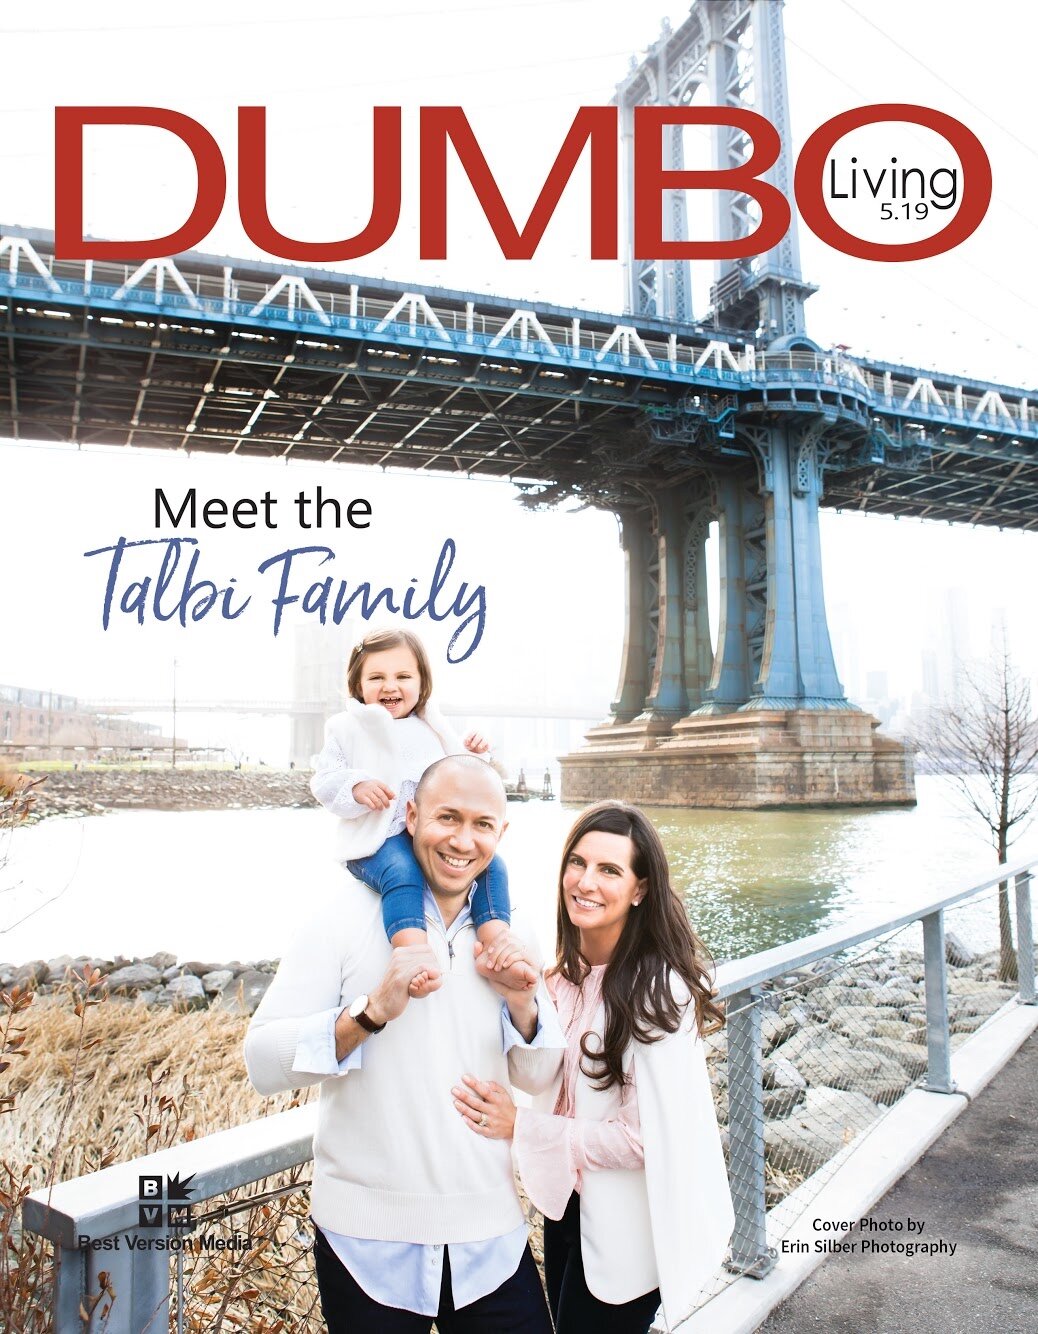 Dumbo Living May 2019 Cover.jpg